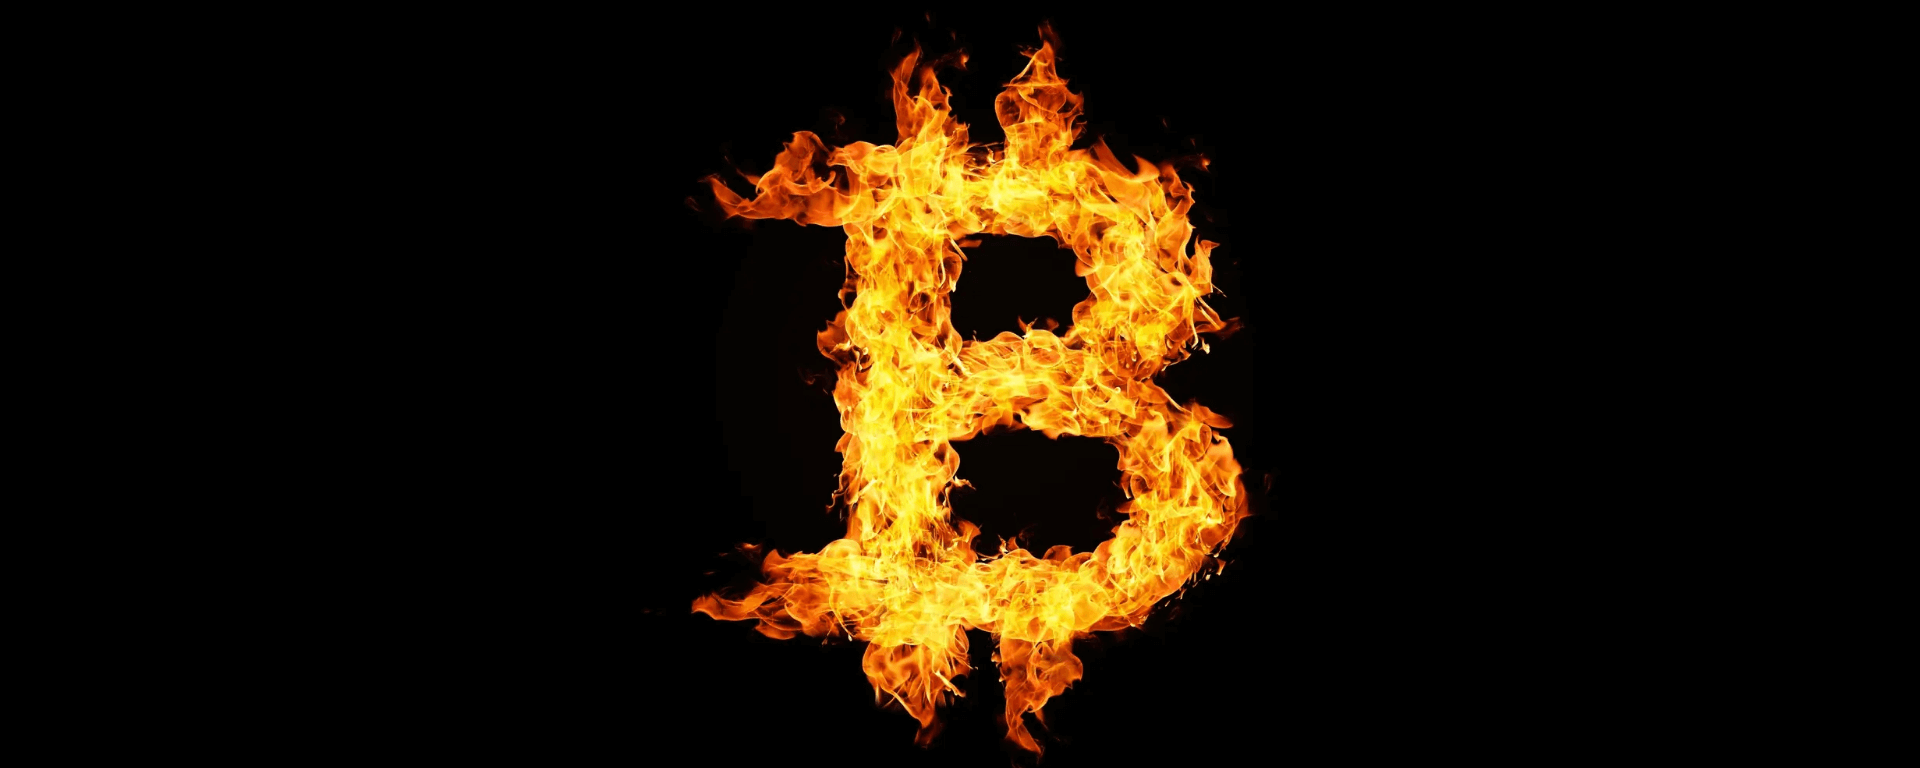 Bitcoin despenca mais de $ 5K em um dia, deixando $ 800 milhões em liquidações